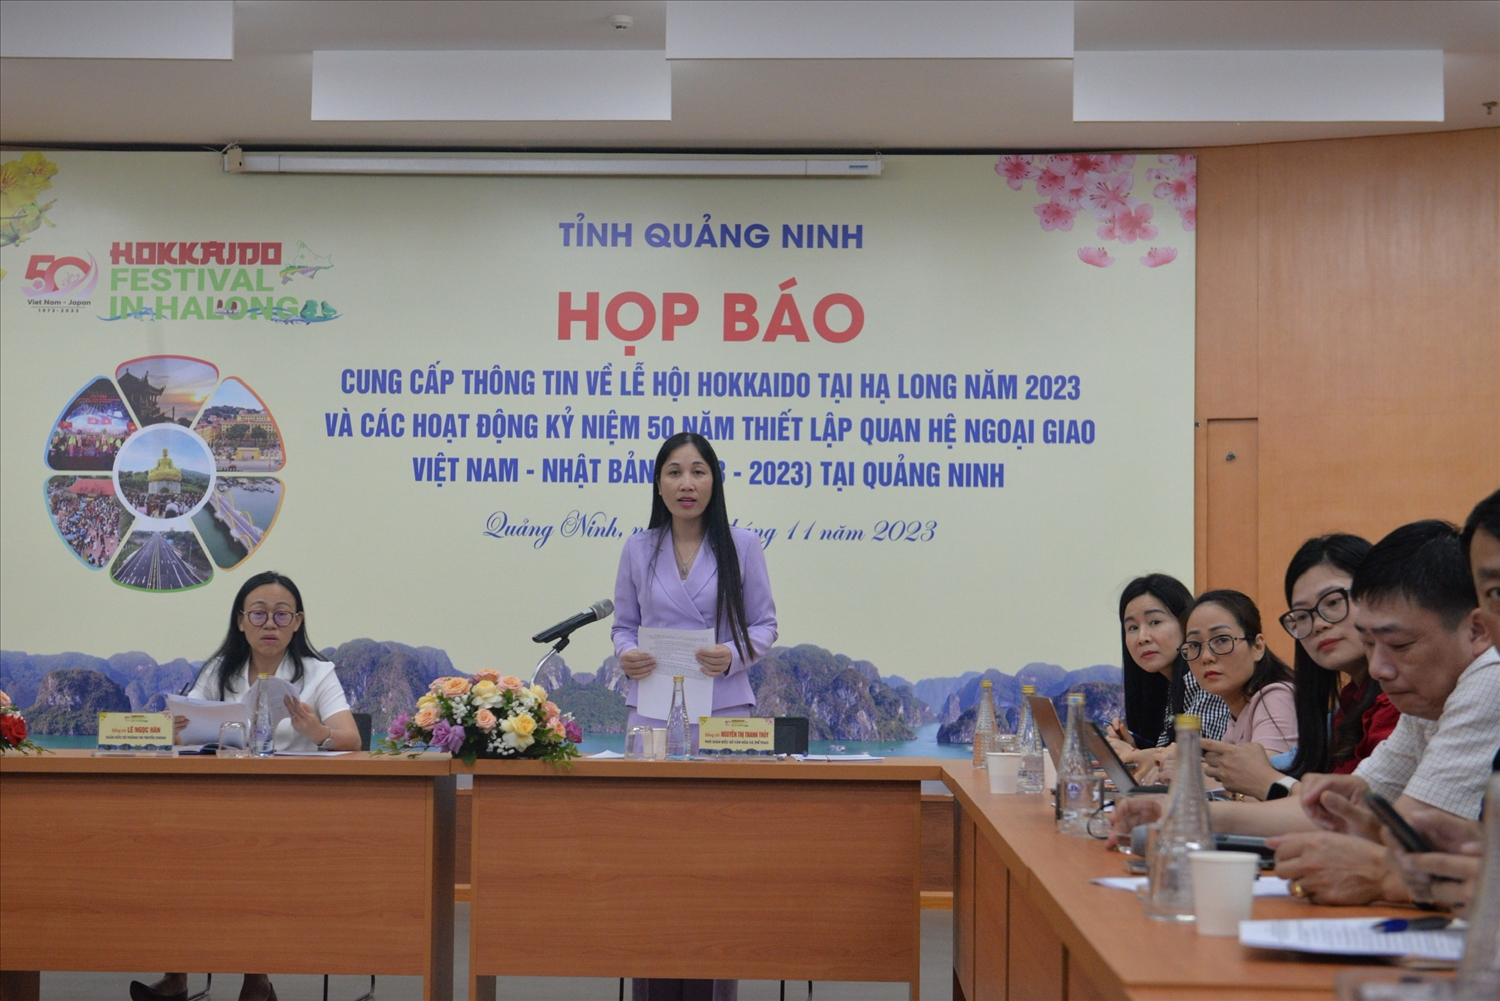 Phó Giám đốc Sở Văn hoá Thể thao Quảng Ninh Nguyễn Thị Thanh Thuỷ thông tin tại họp báo